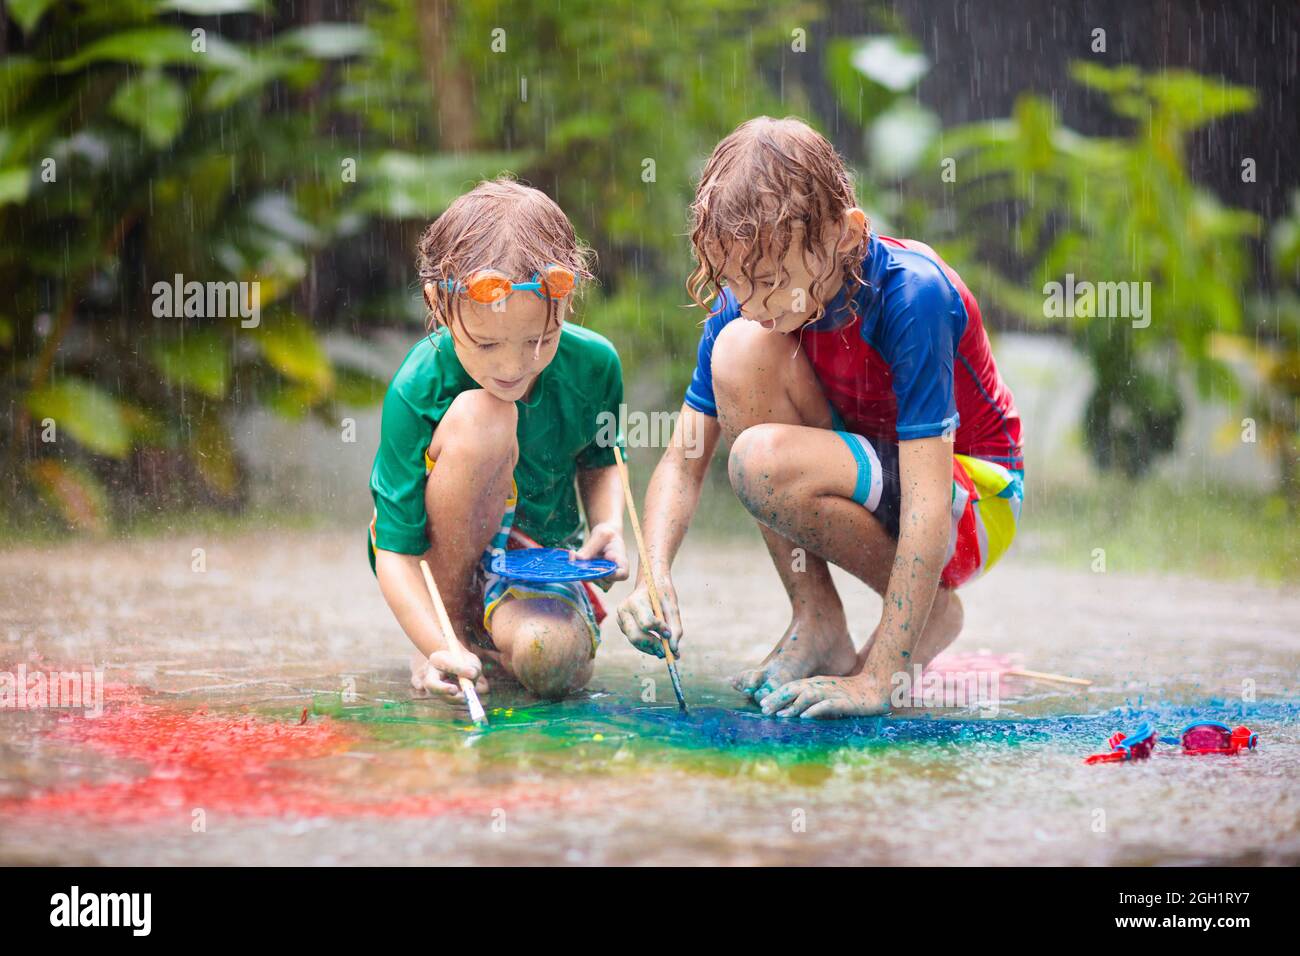 Kinder spielen im Regen. Kreidezeichnen Spaß. Kunst und Kunsthandwerk für  kleine Kinder. Jungen experimentieren mit Aquarell in schwerer Dusche im  Freien im Garten Stockfotografie - Alamy